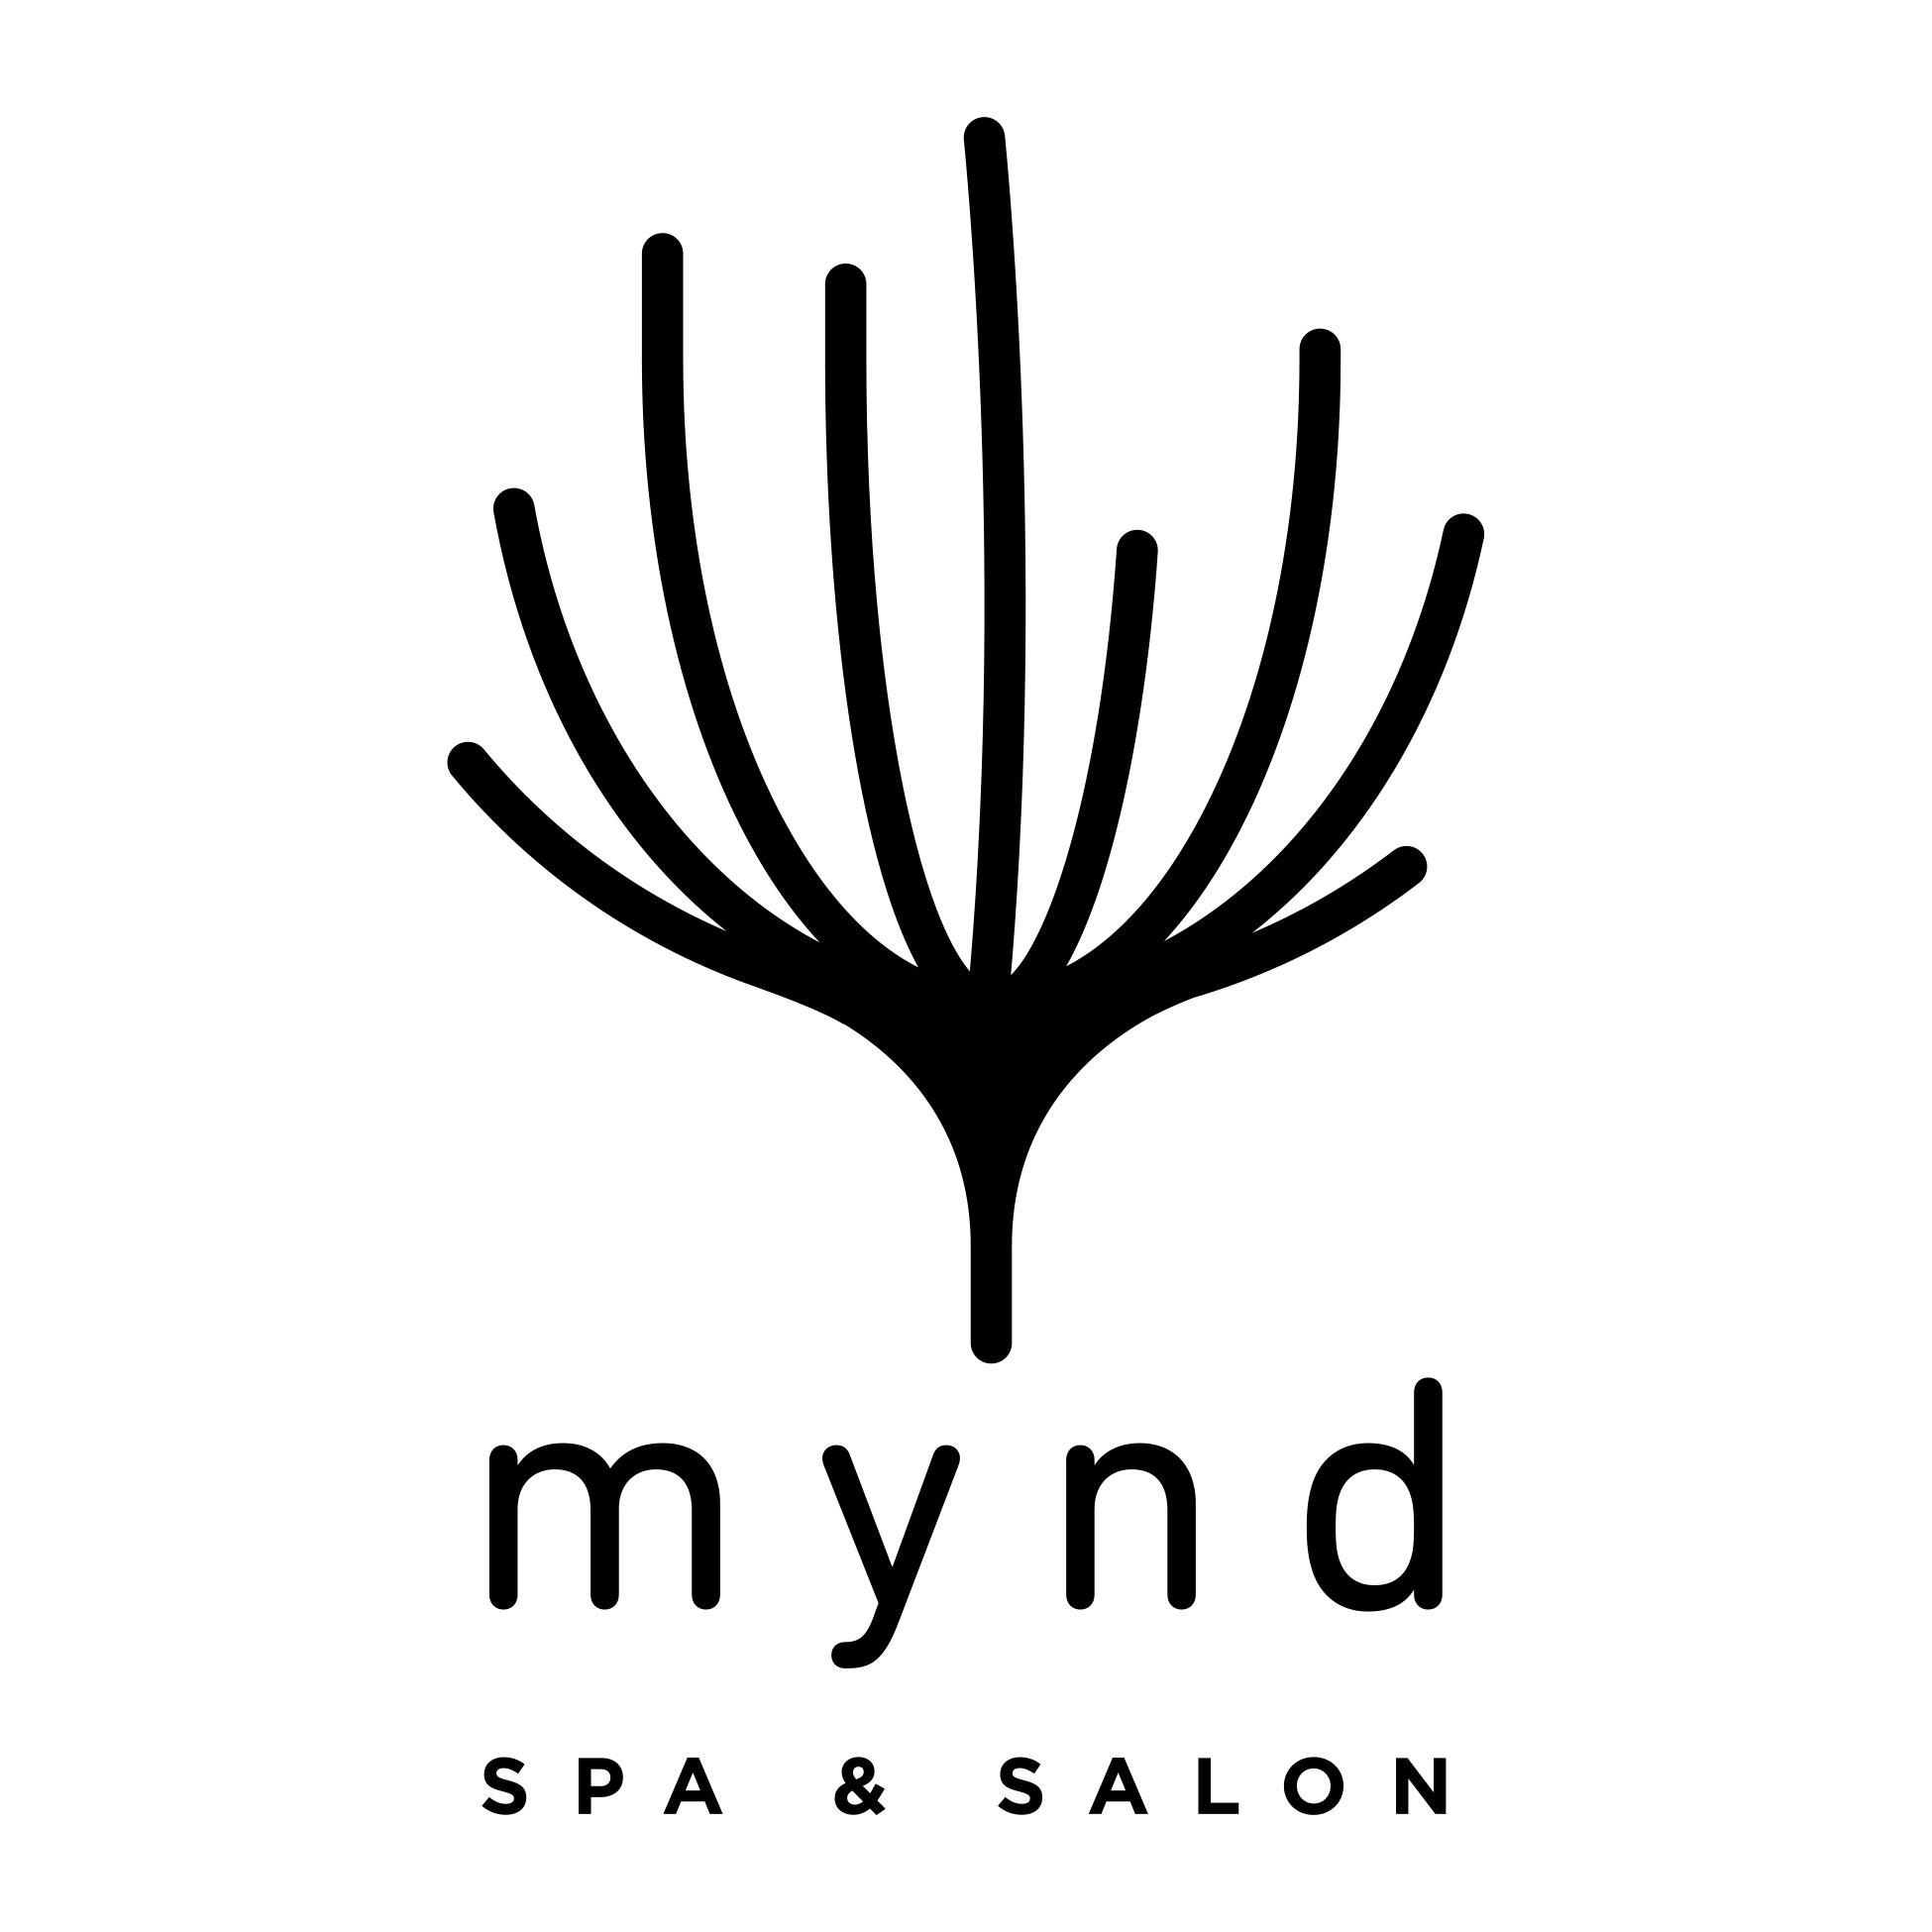 Mynd Spa & Salon